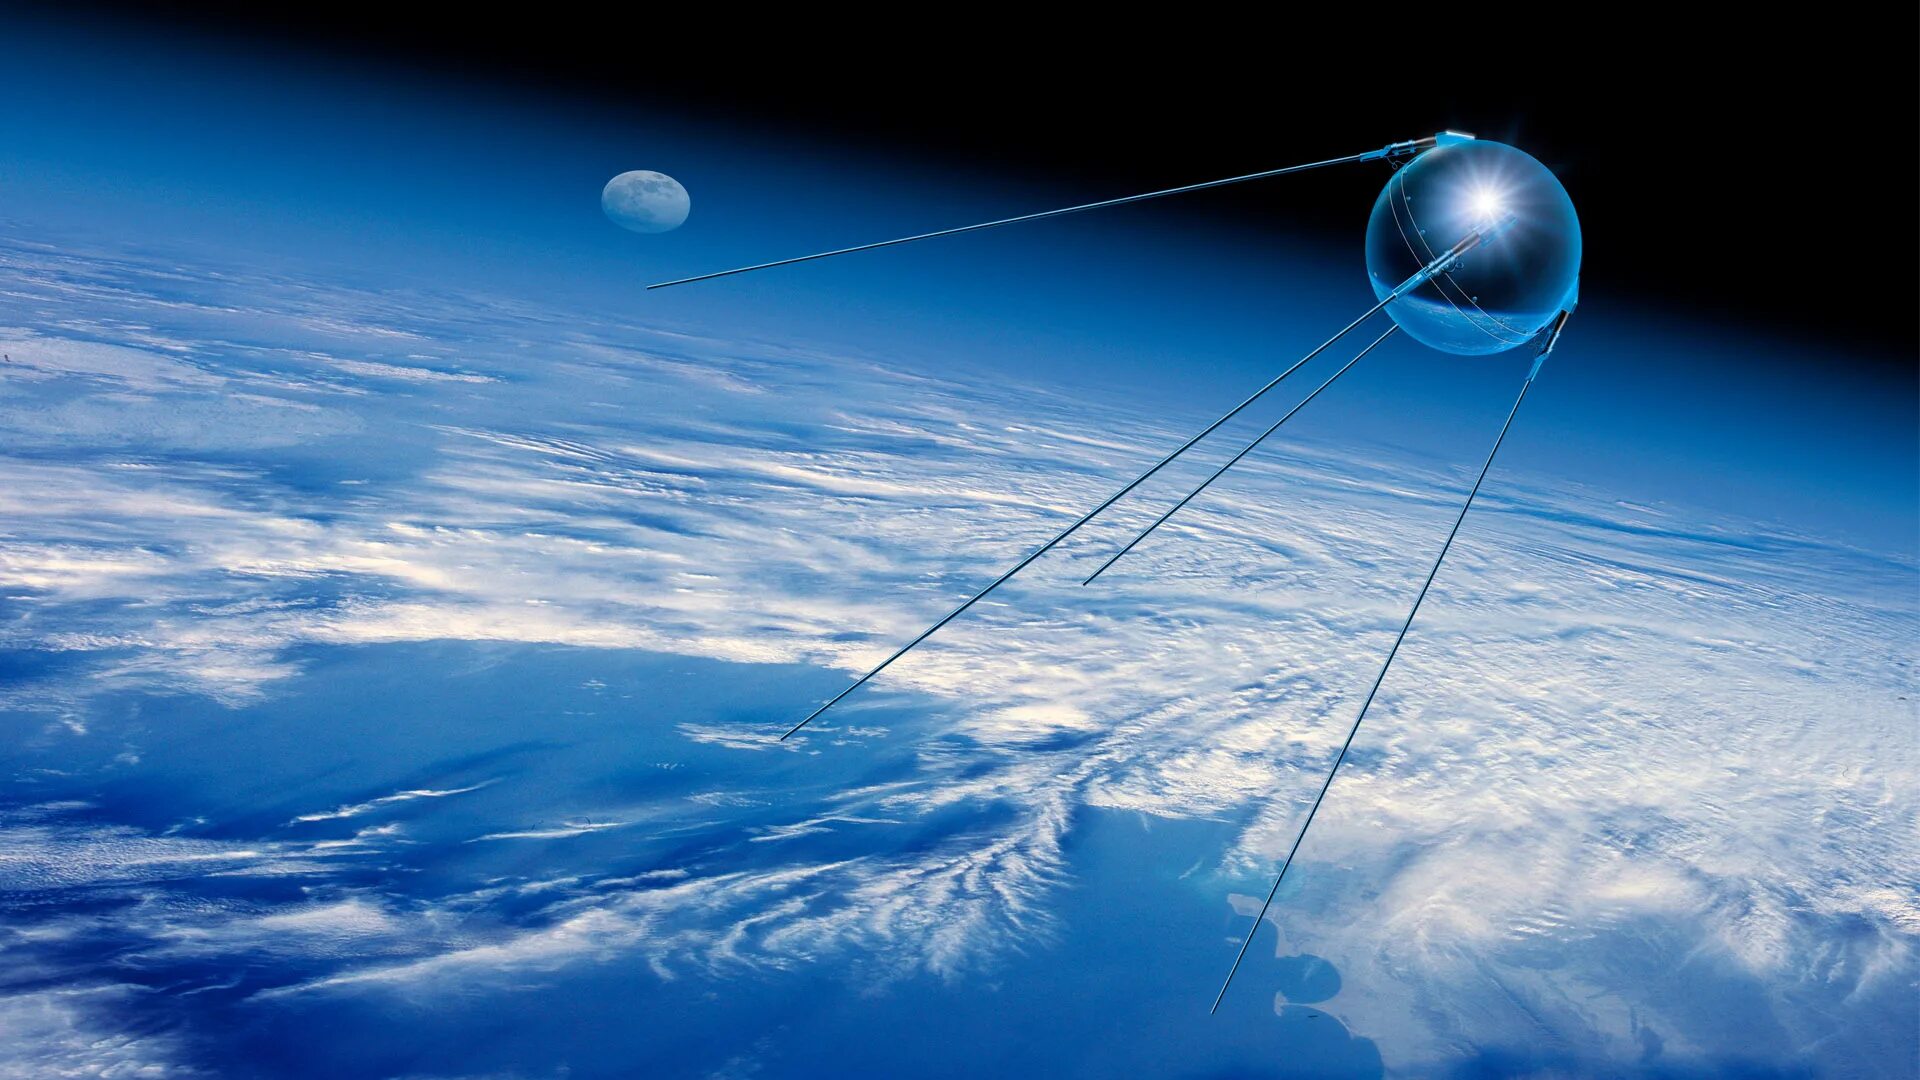 Спутник 1 первый искусственный Спутник земли. «Спутник-1», первый искуссттвенный Спутник. Первый искусственный Спутник земли 1957. ПС-1 Спутник. Первый искусственный спутник фото